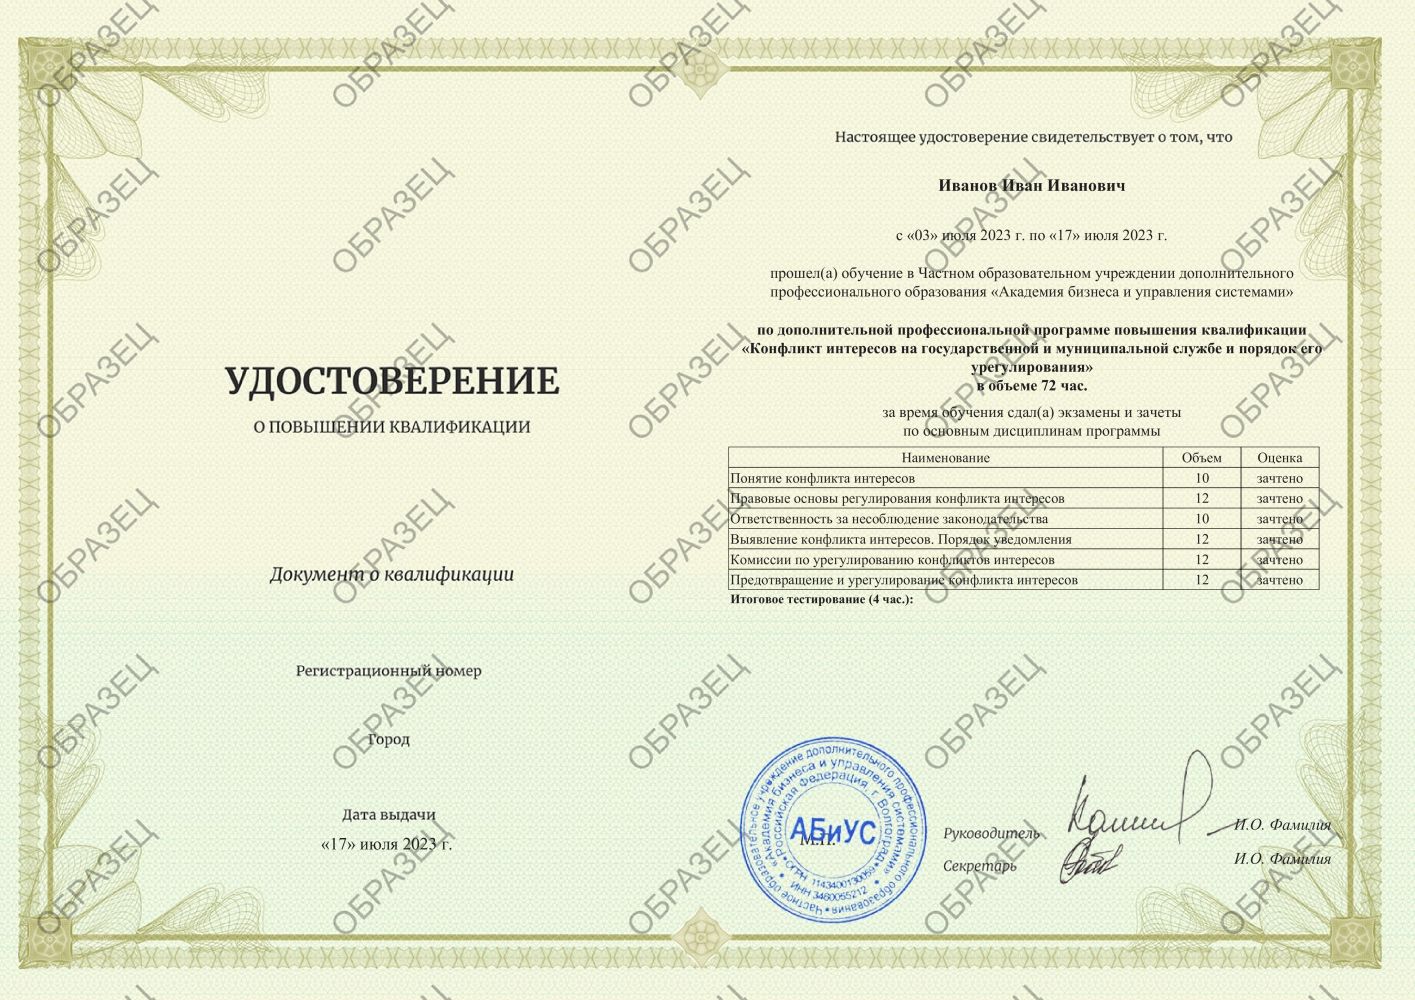 Удостоверение Конфликт интересов на государственной и муниципальной службе и порядок его урегулирования 72 часа 4625 руб.